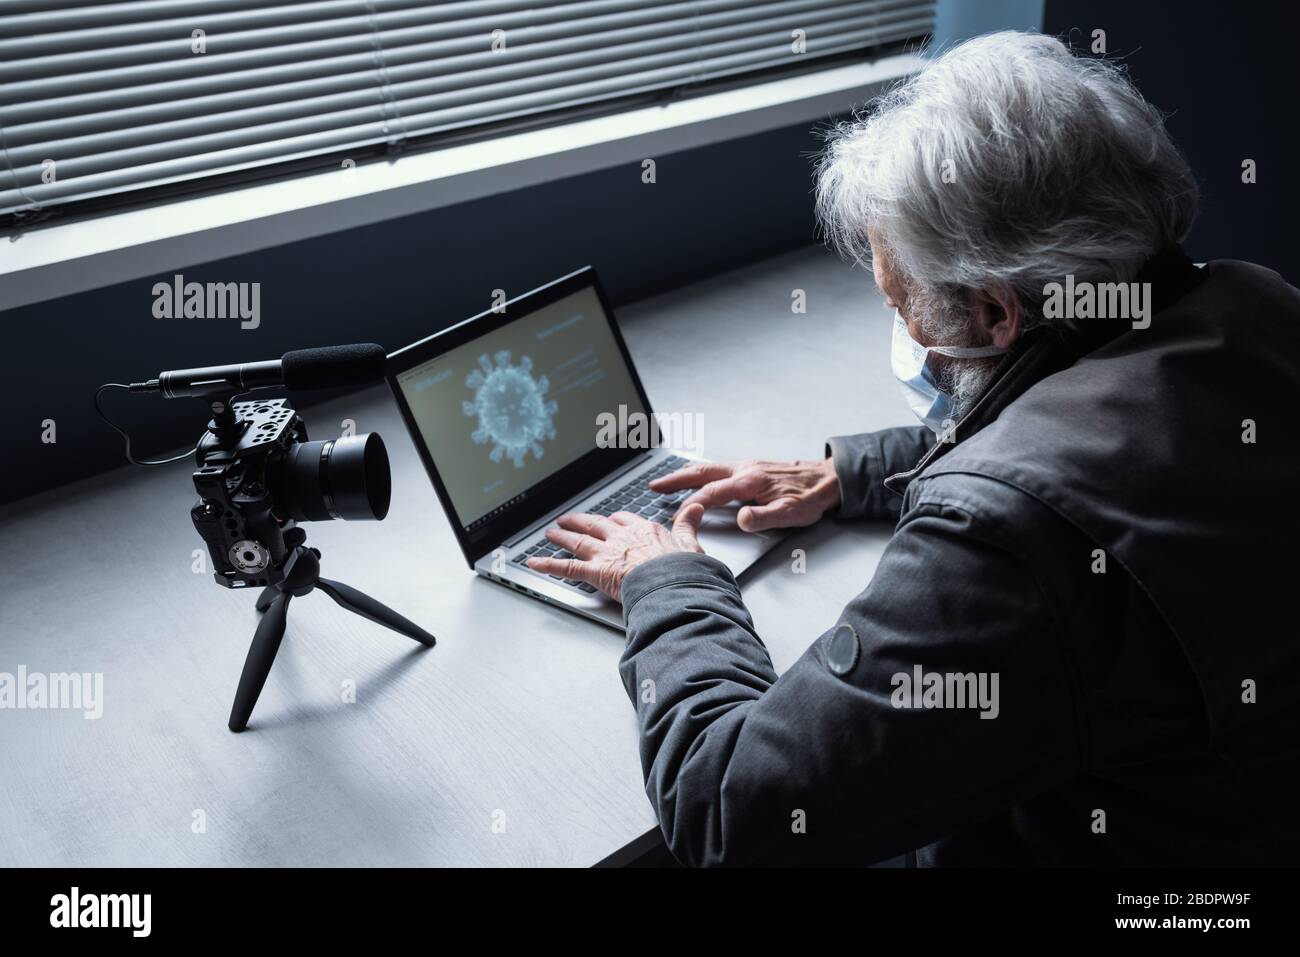 Homme senior assis au bureau et portant un masque chirurgical, il se connecte à son ordinateur portable et diffuse une vidéo en ligne sur son canal, covid-19 virus o Banque D'Images